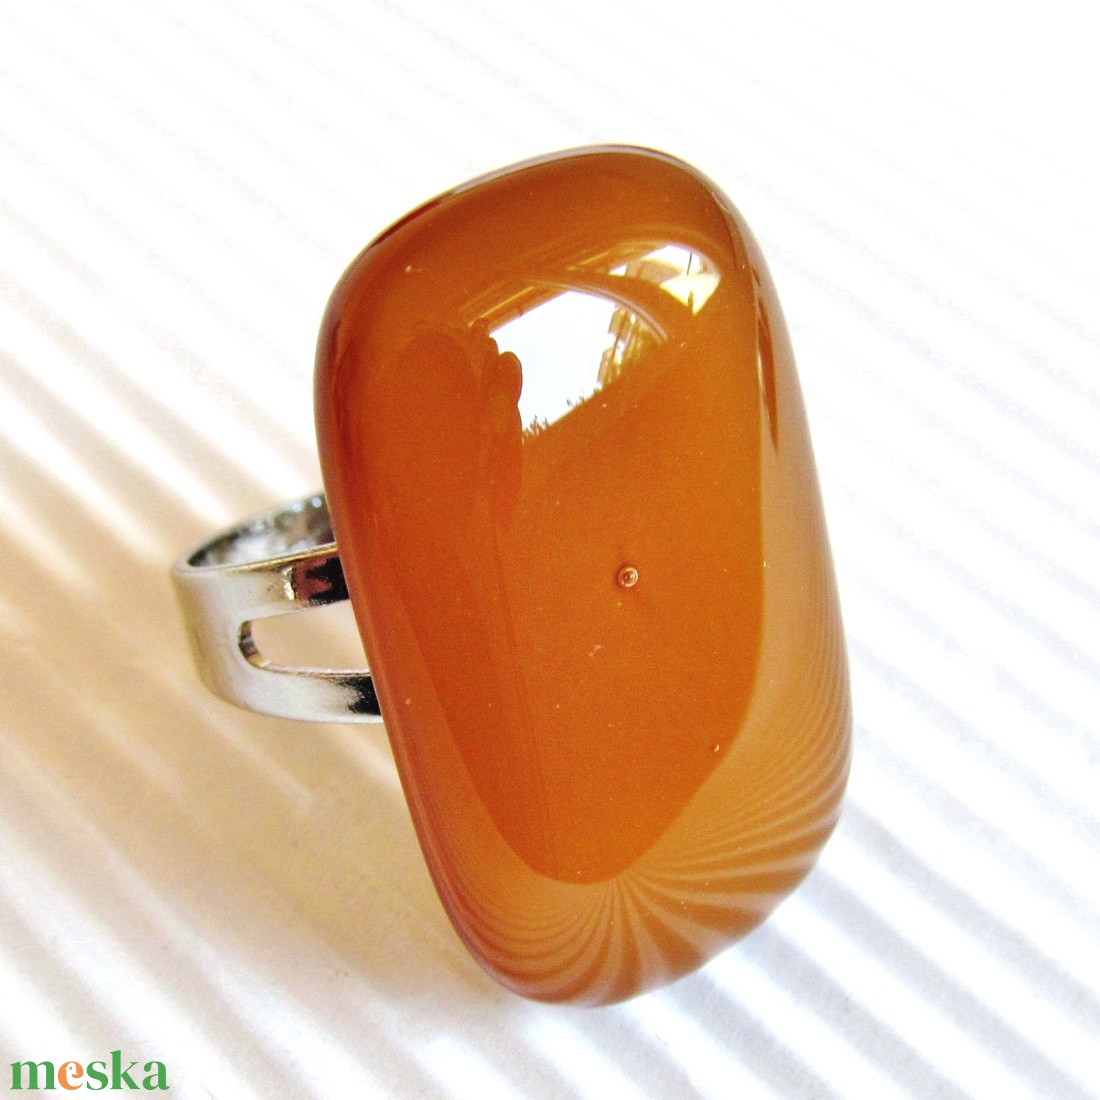 Karamell barna elegáns üveg gyűrű, üvegékszer - ékszer - gyűrű - statement gyűrű - Meska.hu